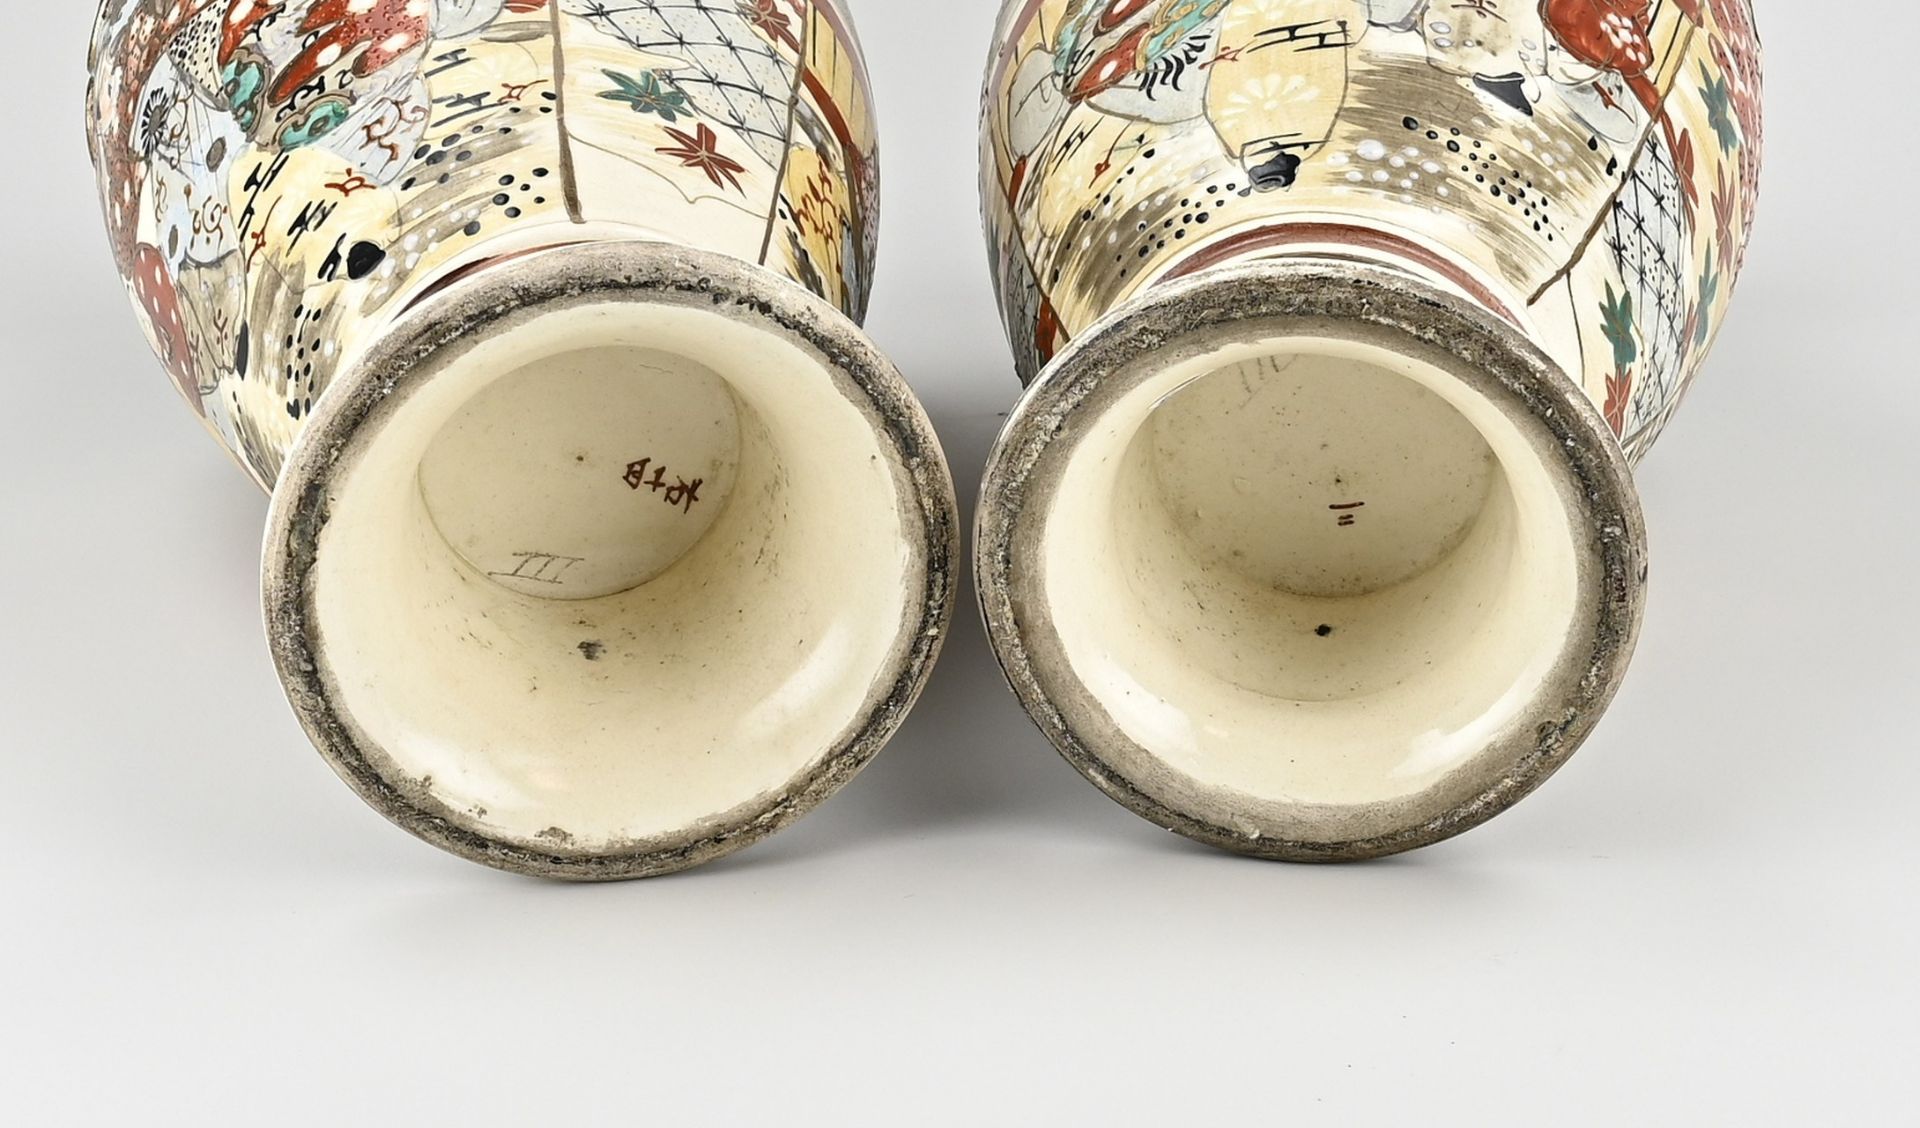 Two Japanese Satsuma vases - Image 2 of 2